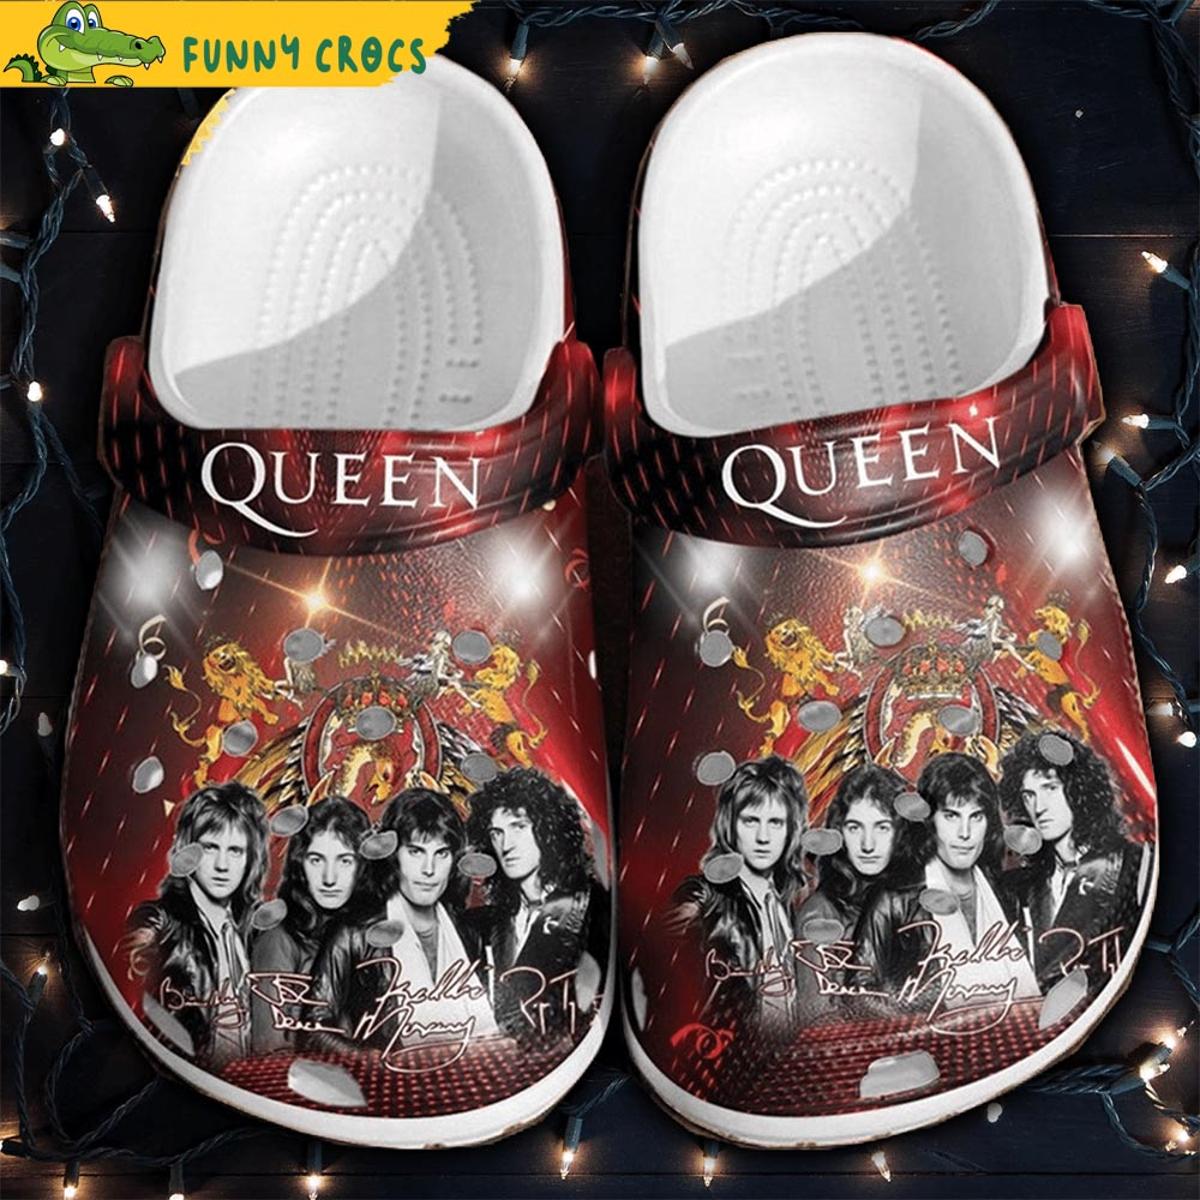 Funny Rock Band Queen Crocs Shoes